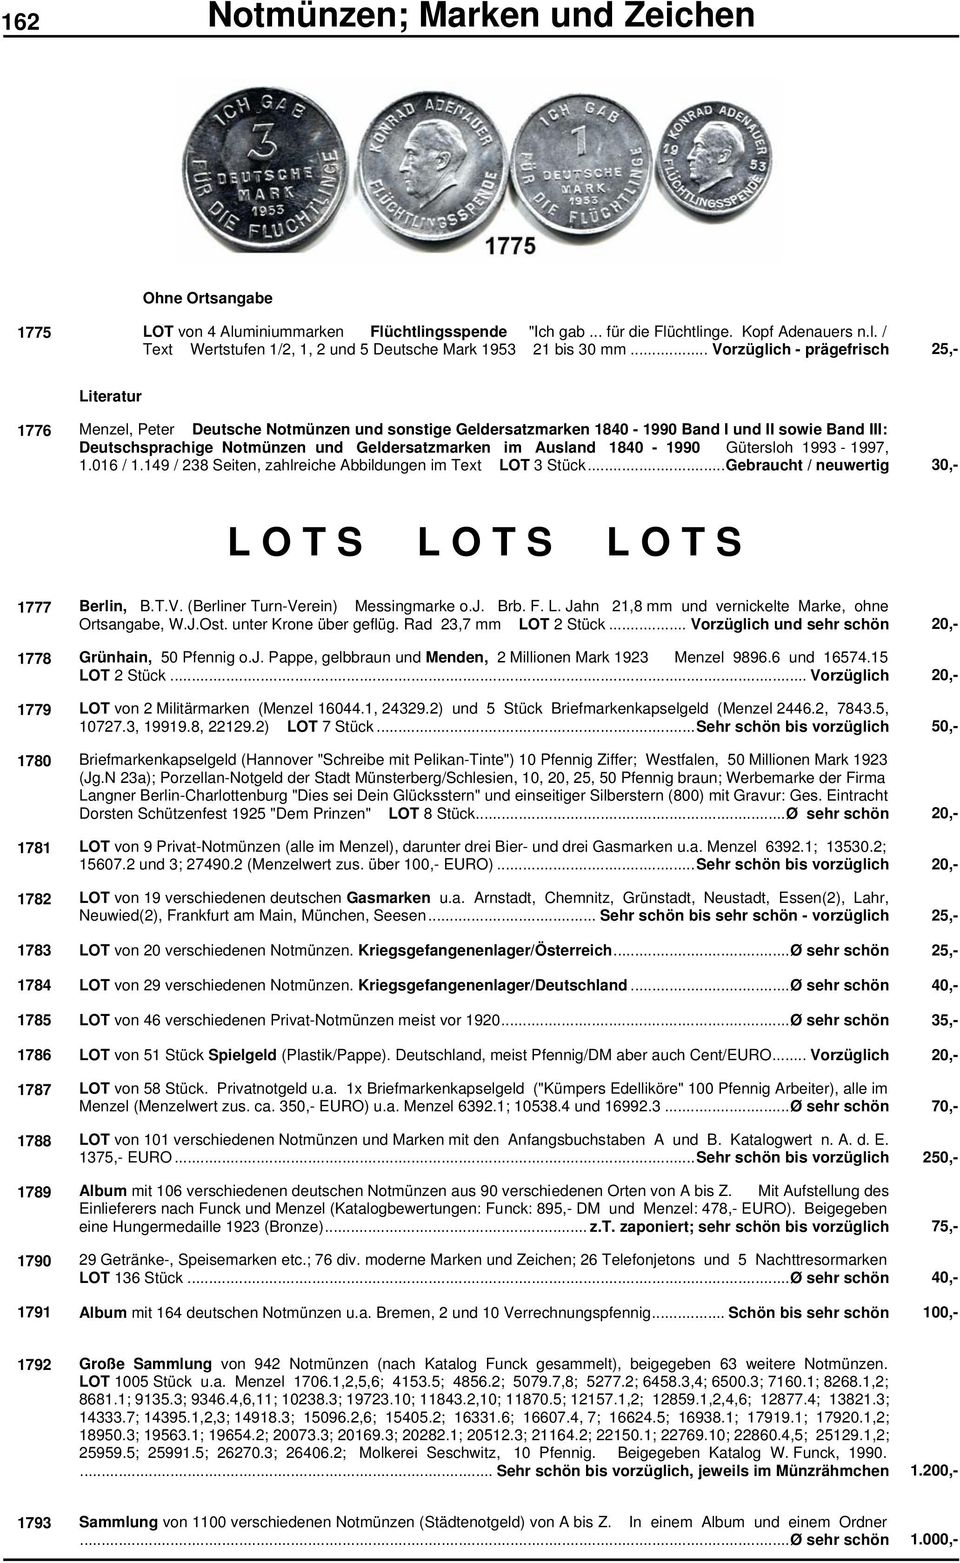 im Ausland 1840-1990 Gütersloh 1993-1997, 1.016 / 1.149 / 238 Seiten, zahlreiche Abbildungen im Text LOT 3 Stück...Gebraucht / neuwertig 30,- L O T S L O T S L O T S 1777 Berlin, B.T.V.